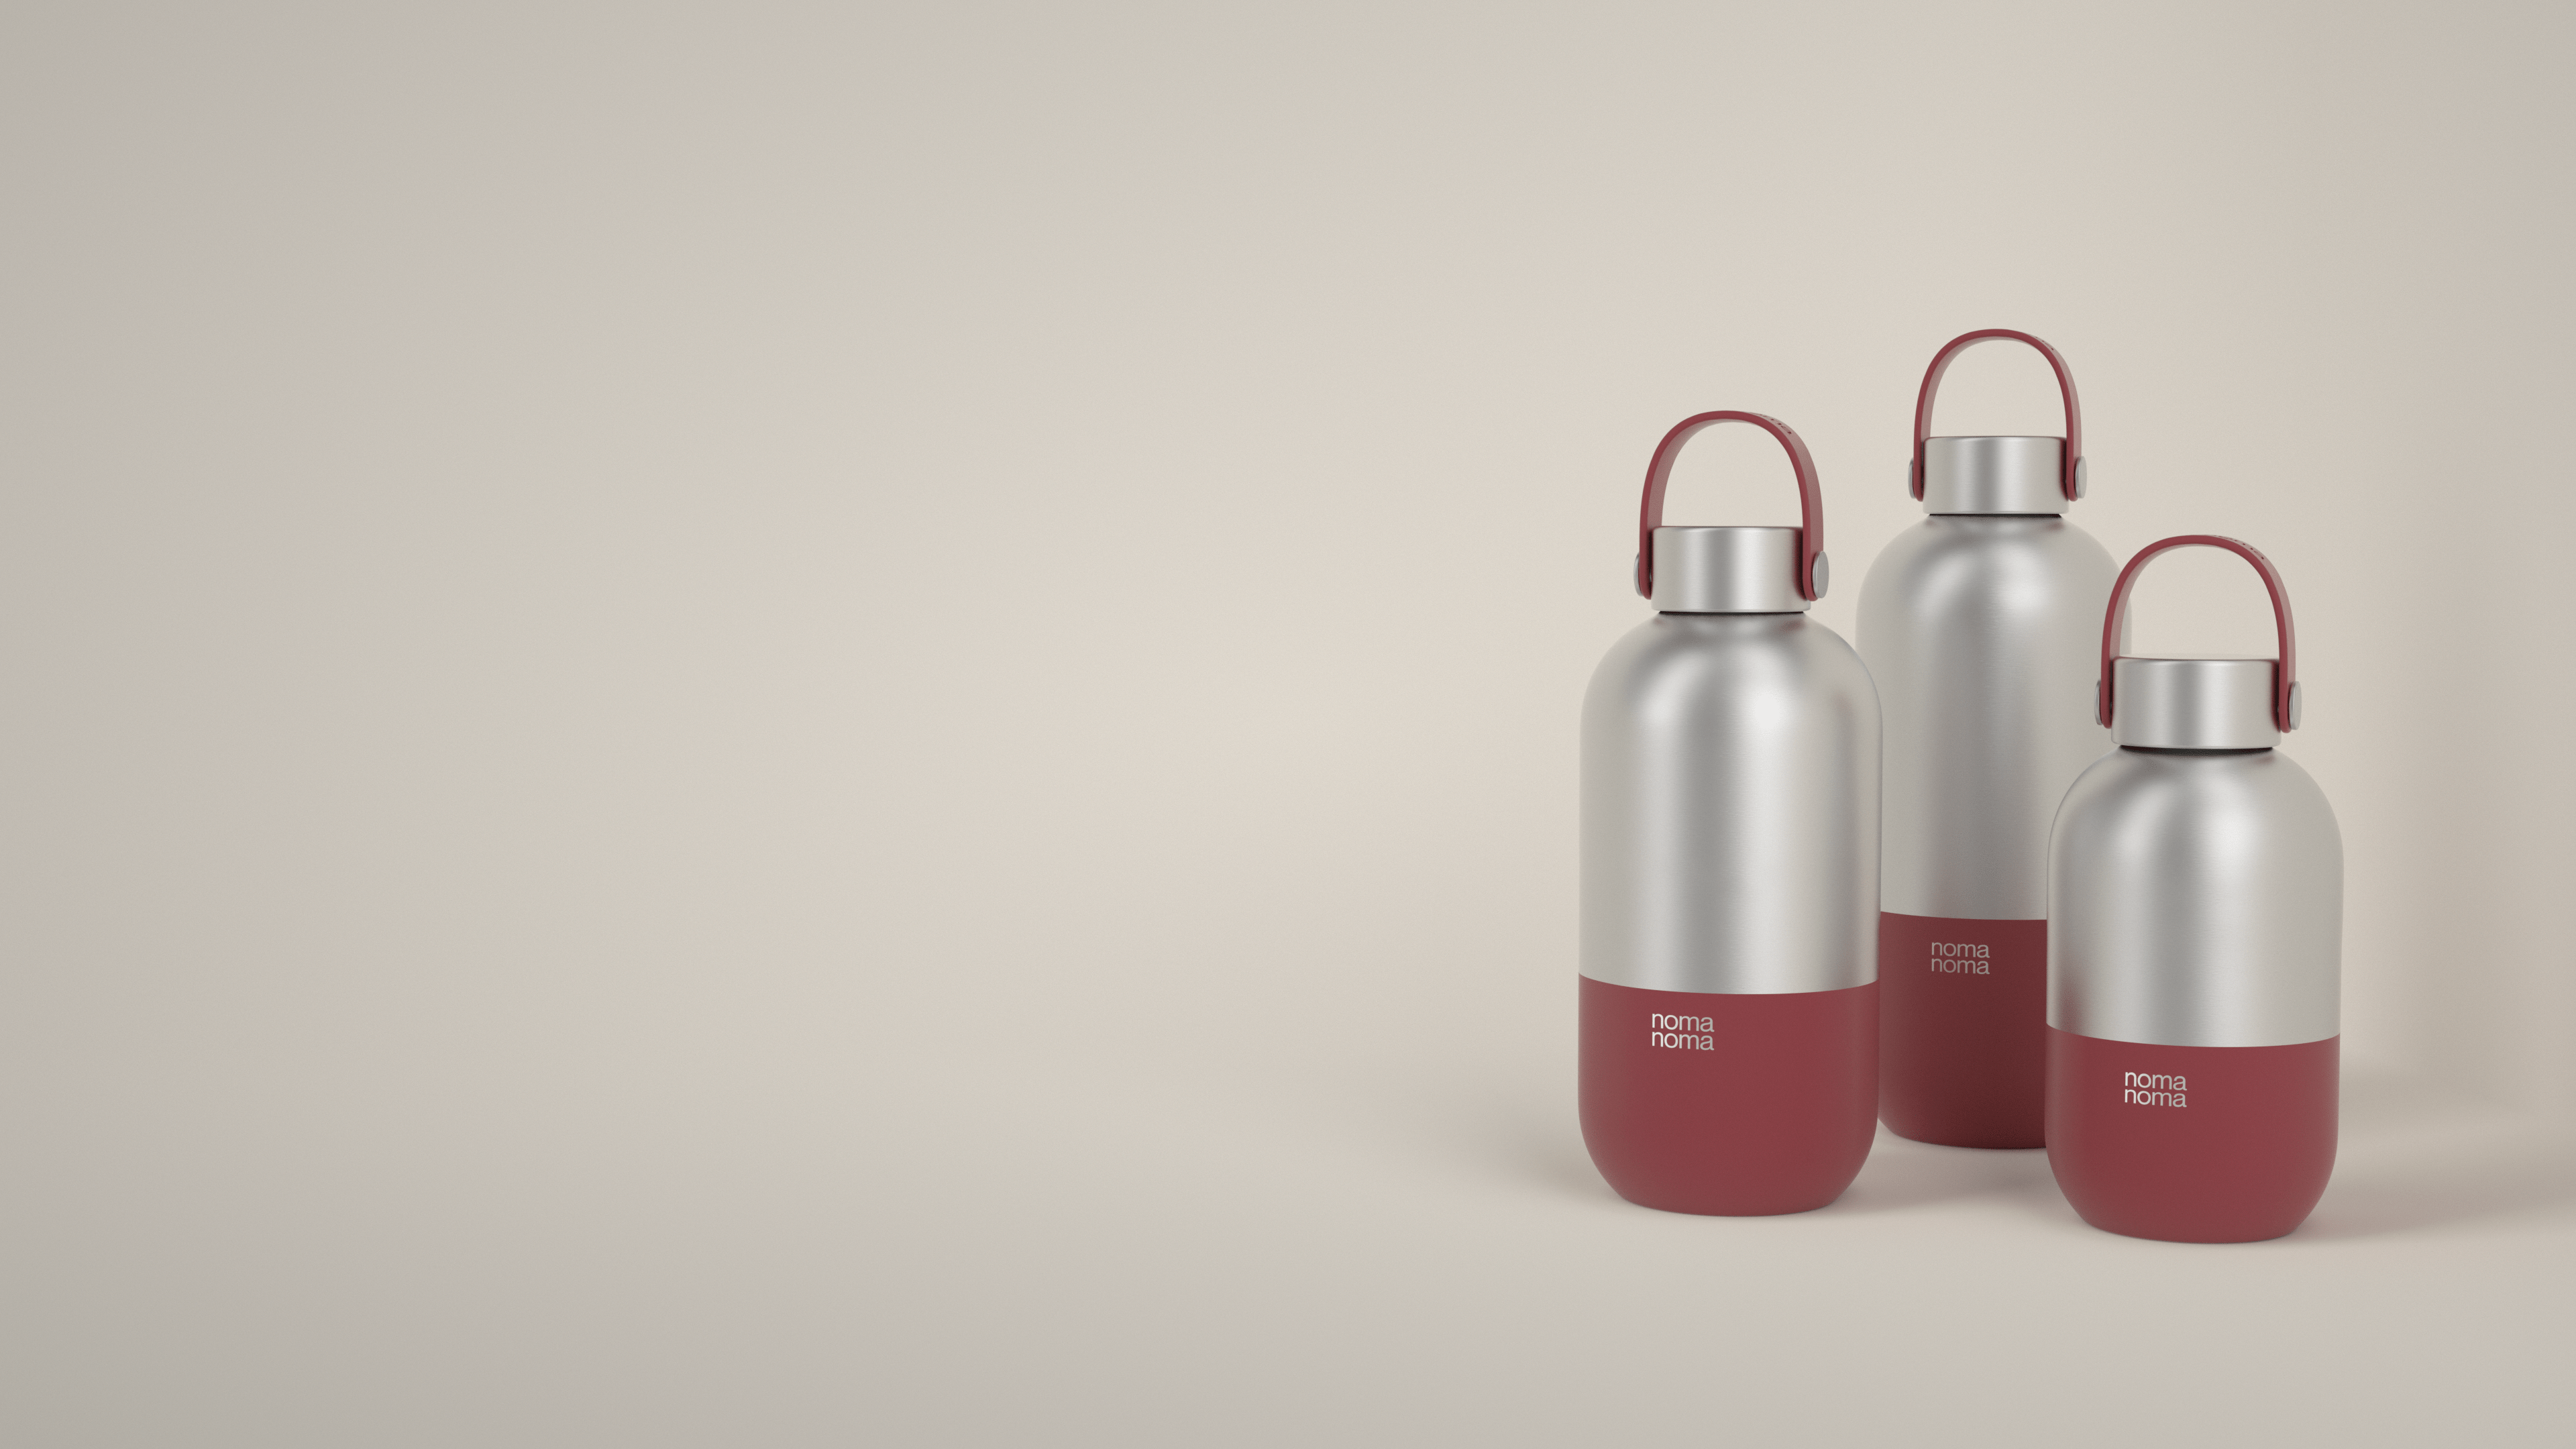 Die rote Trinkflasche von noma noma gibt es in drei praktischen Größen.